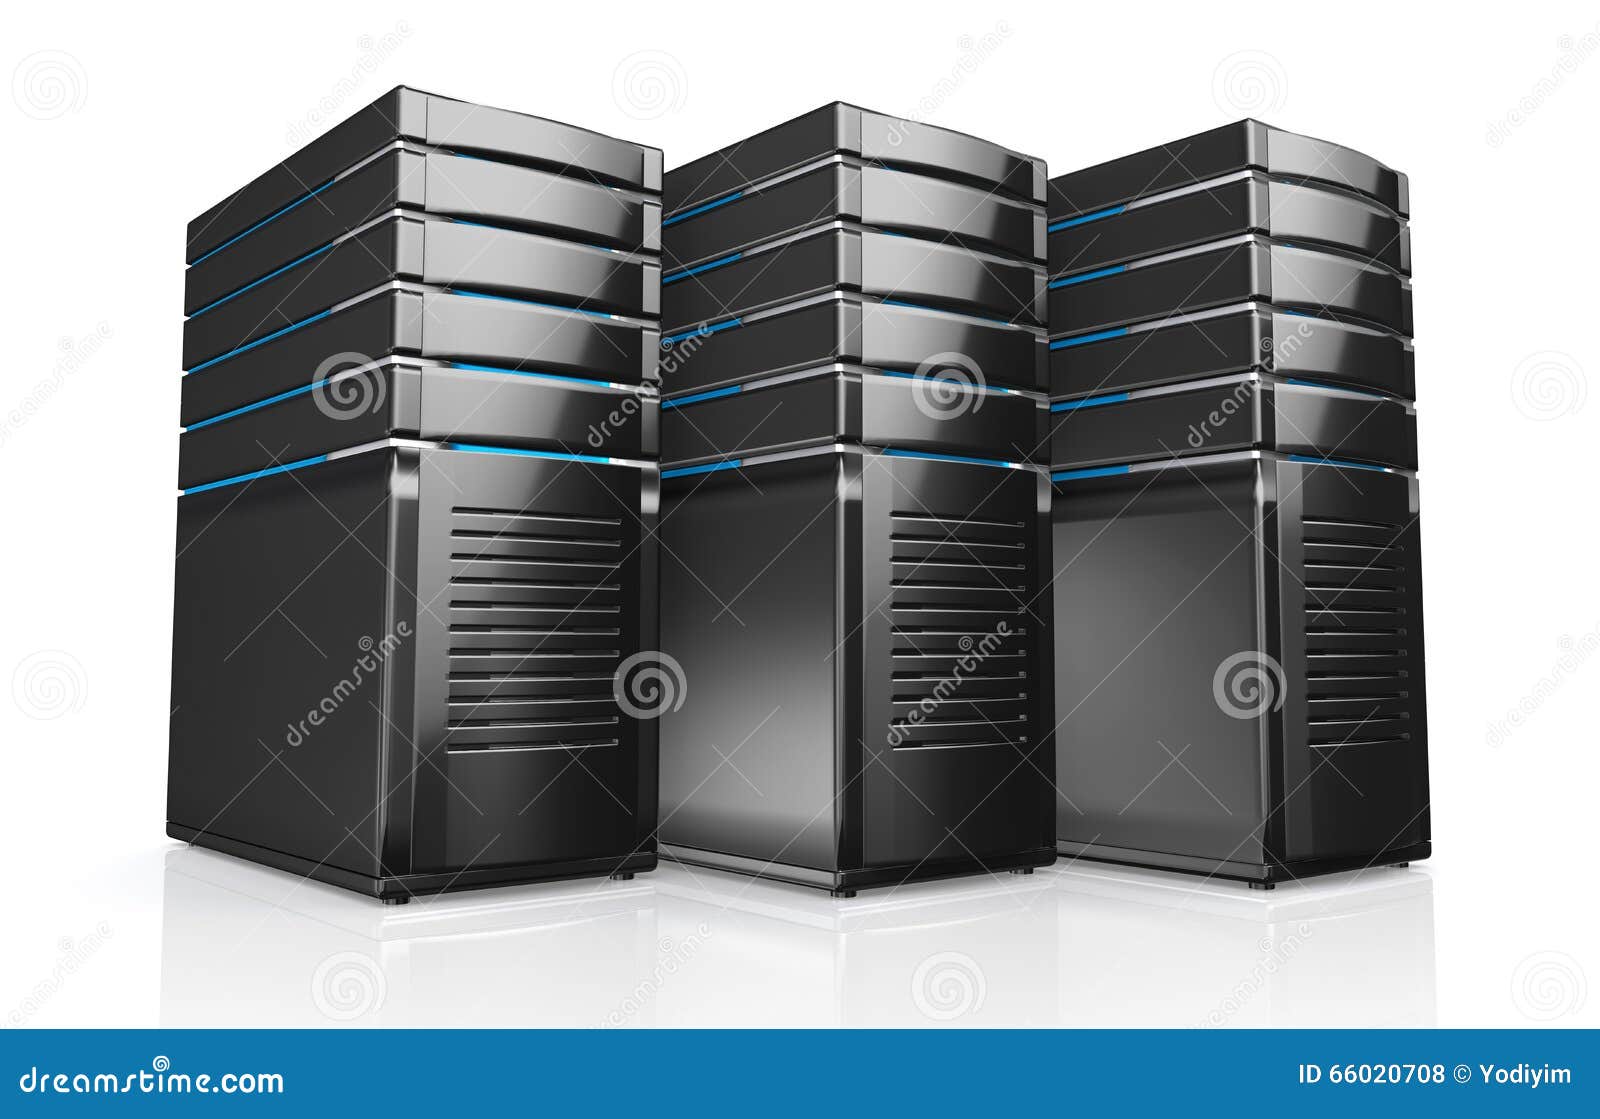 3d of network workstation servers.